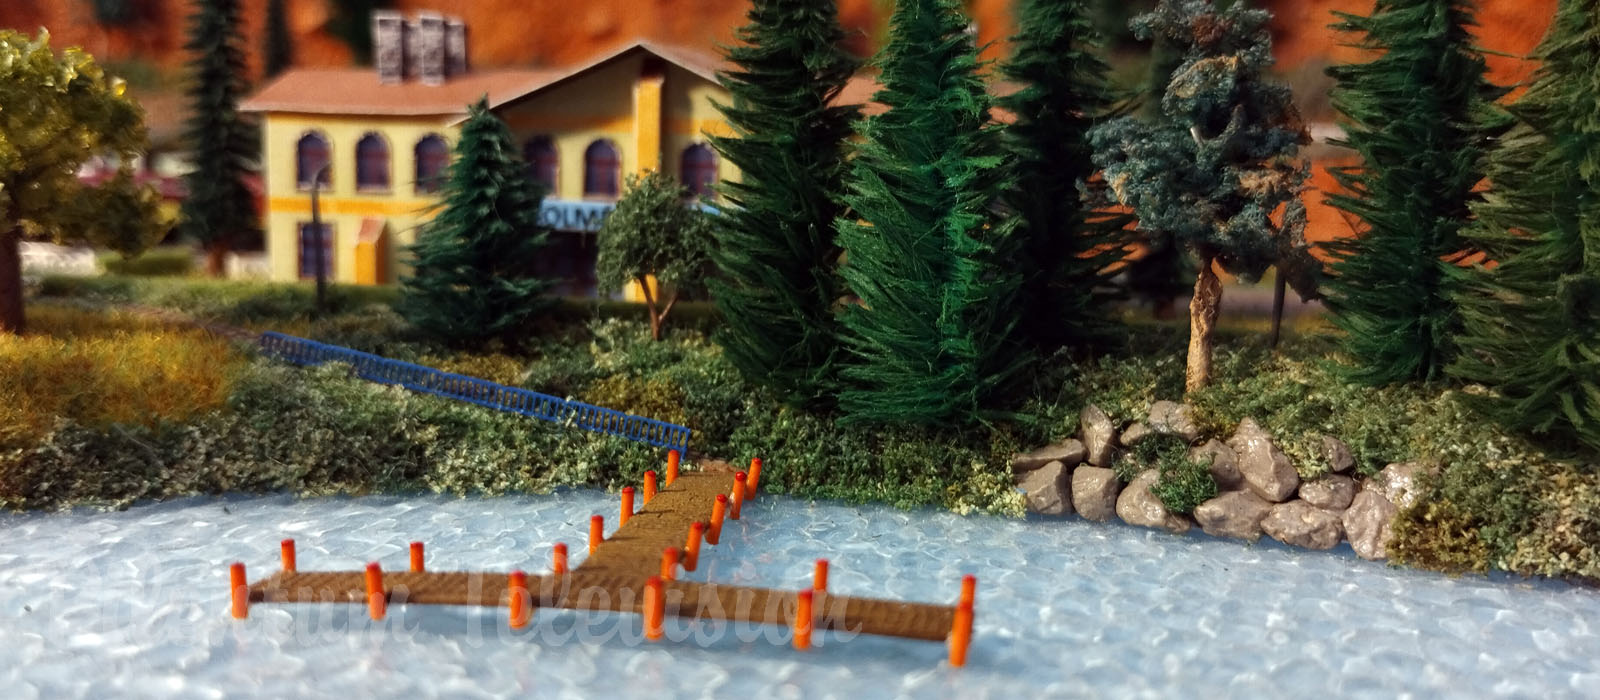 One of the Smallest Model Train Layouts - Micro Model Railroad in T Gauge by Richard Kříž